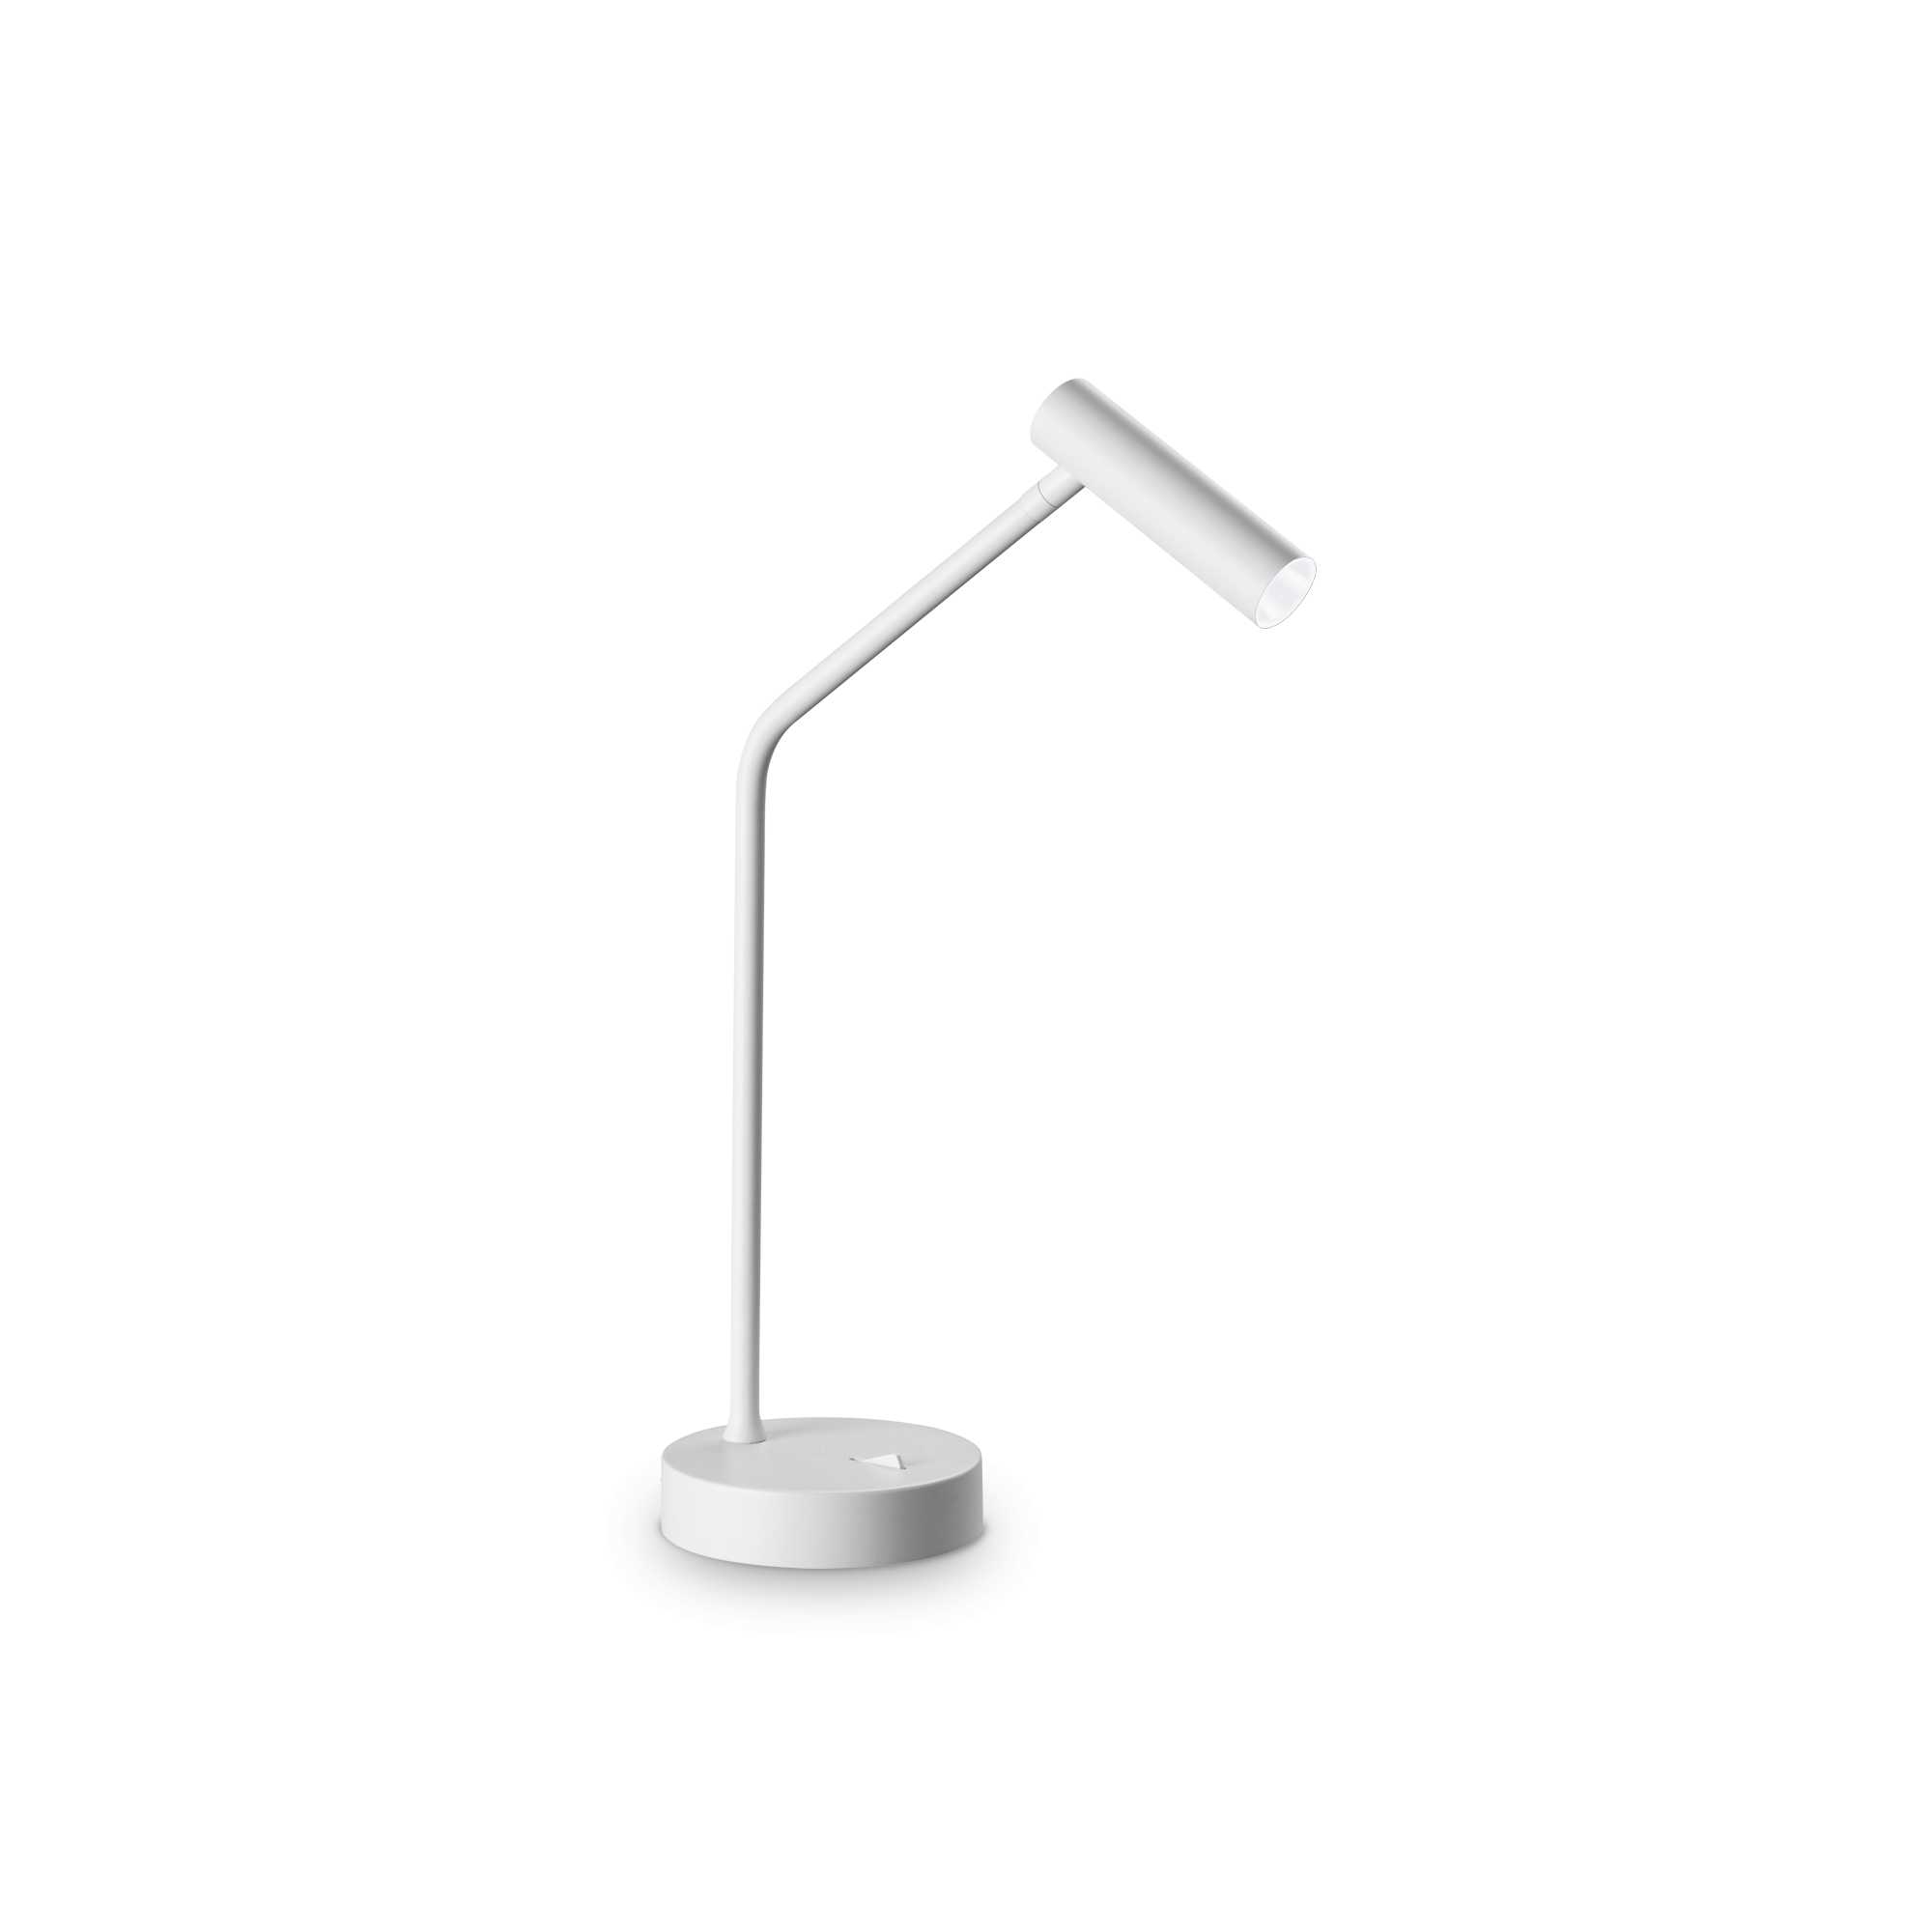 AD hotelska oprema Stolna lampa Easy tl- Bijele boje slika proizvoda